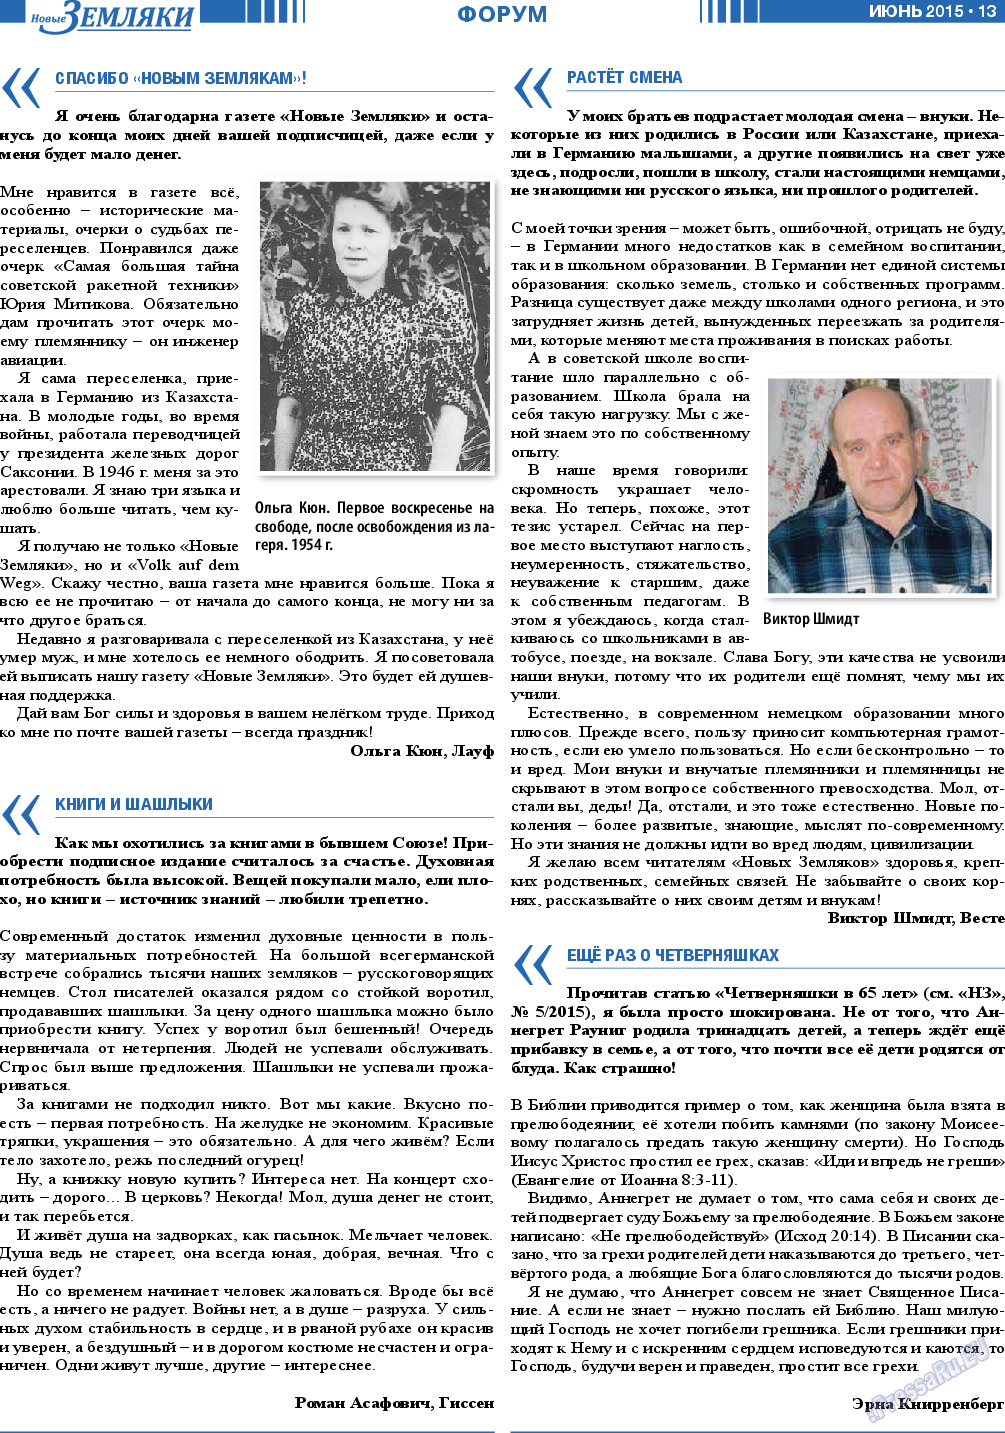 Новые Земляки, газета. 2015 №6 стр.13